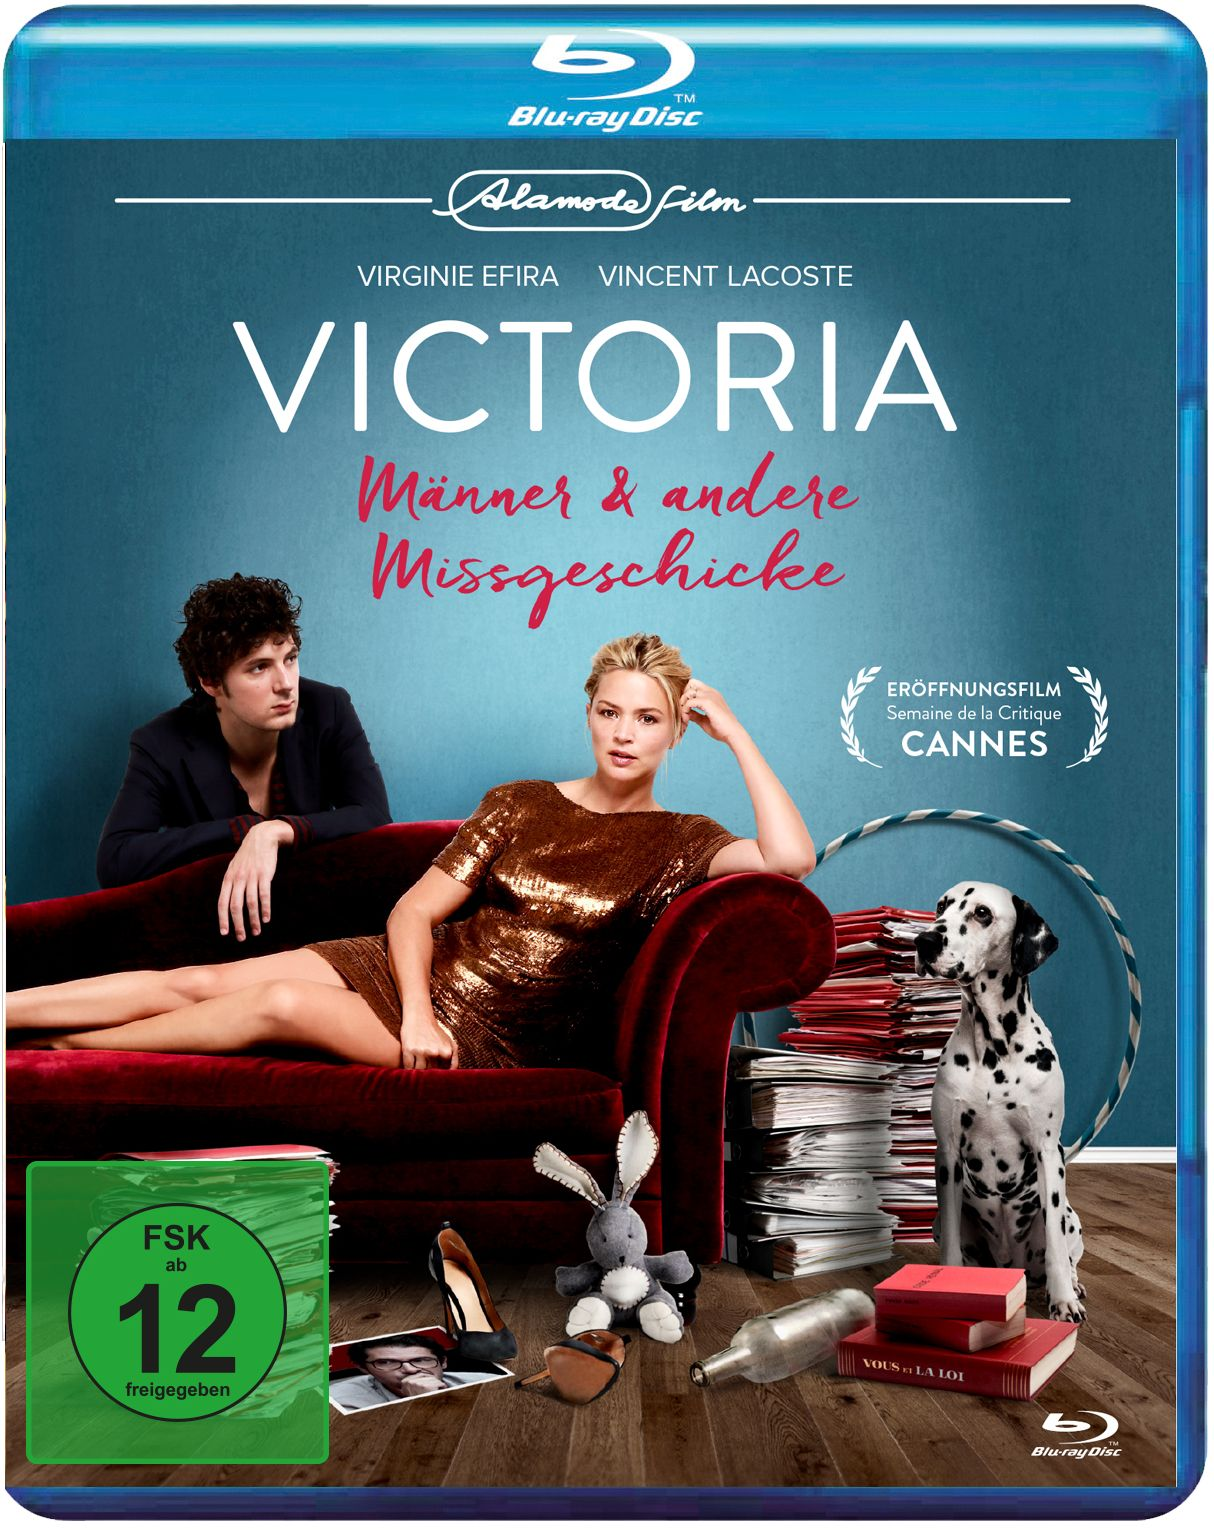 VICTORIA - MÄNNER & ANDERE Blu-ray MISSGESCHICKE